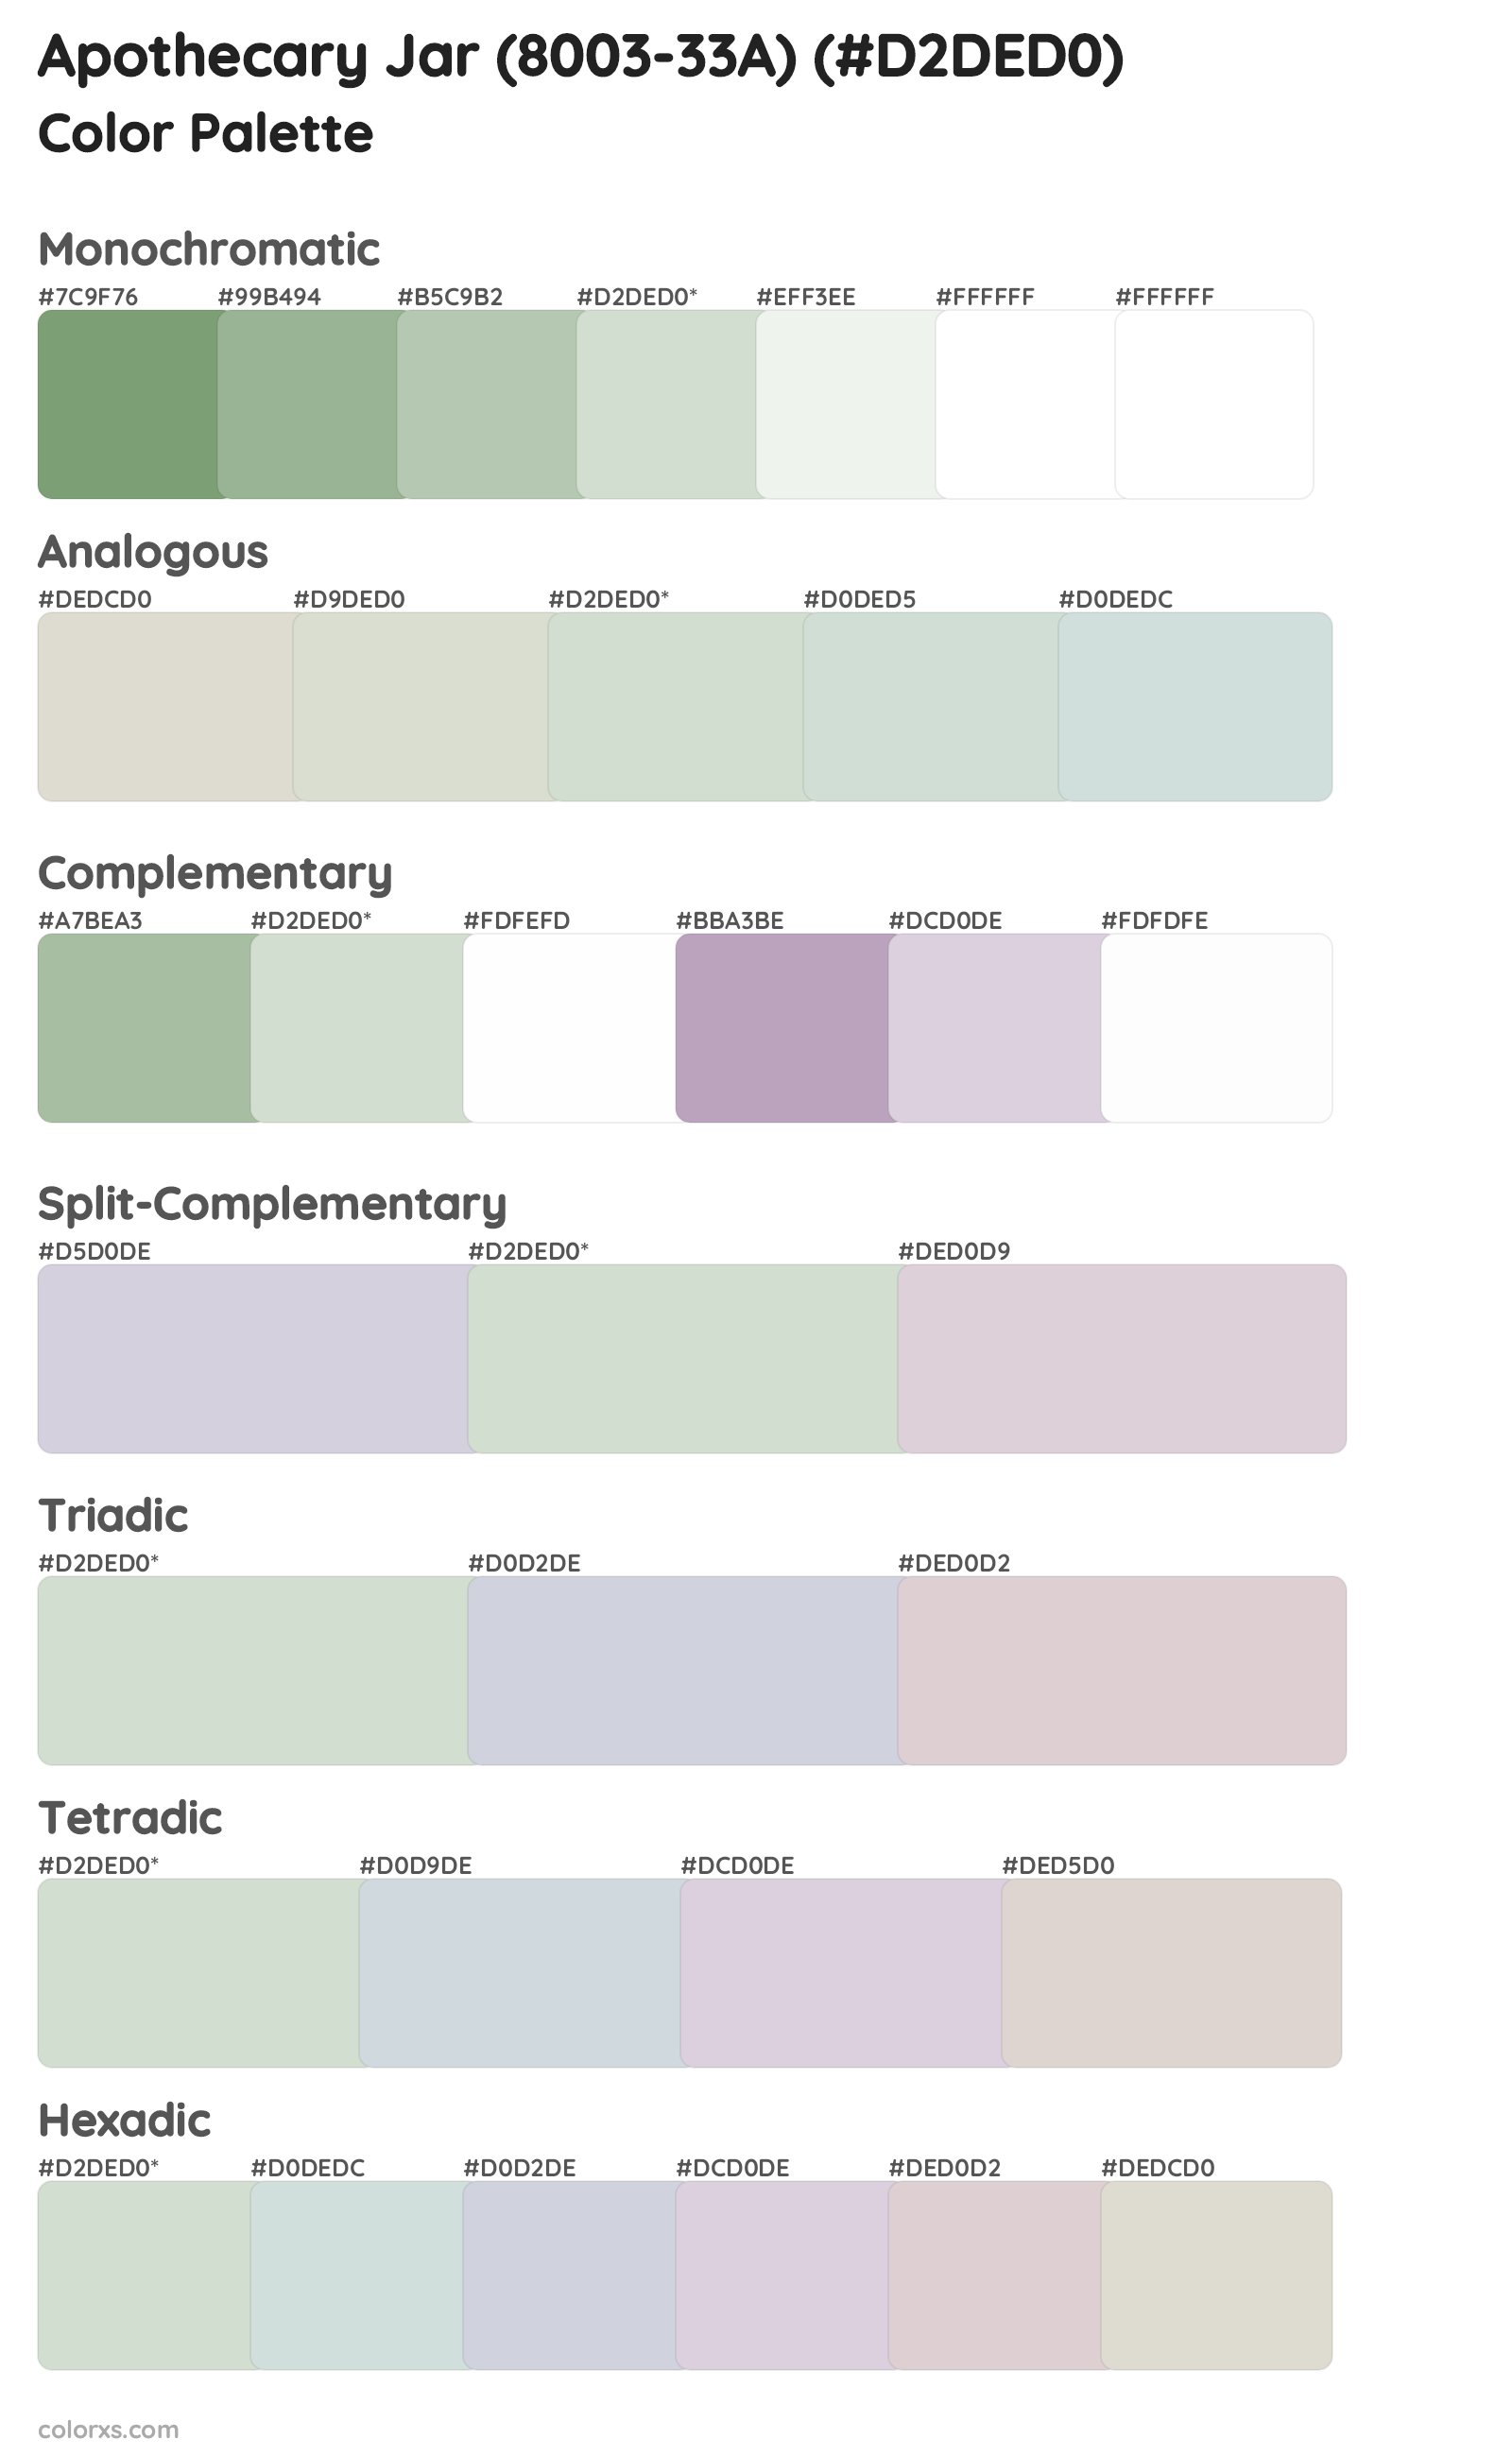 Apothecary Jar (8003-33A) Color Scheme Palettes